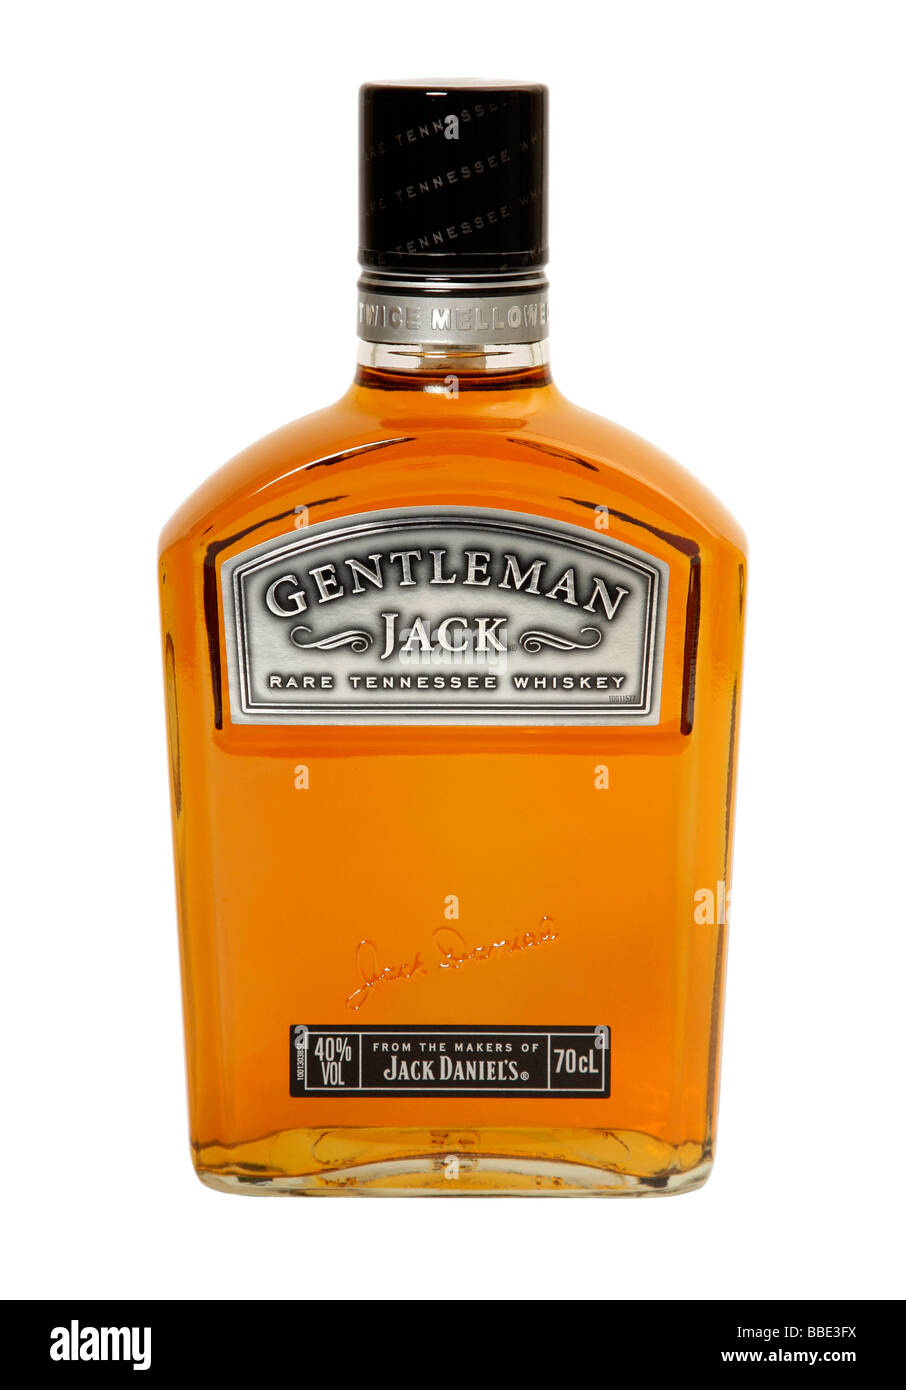 Gentleman Jack Rare Tennessee Whiskey bottle des fabricants de Jack Daniel s Banque D'Images